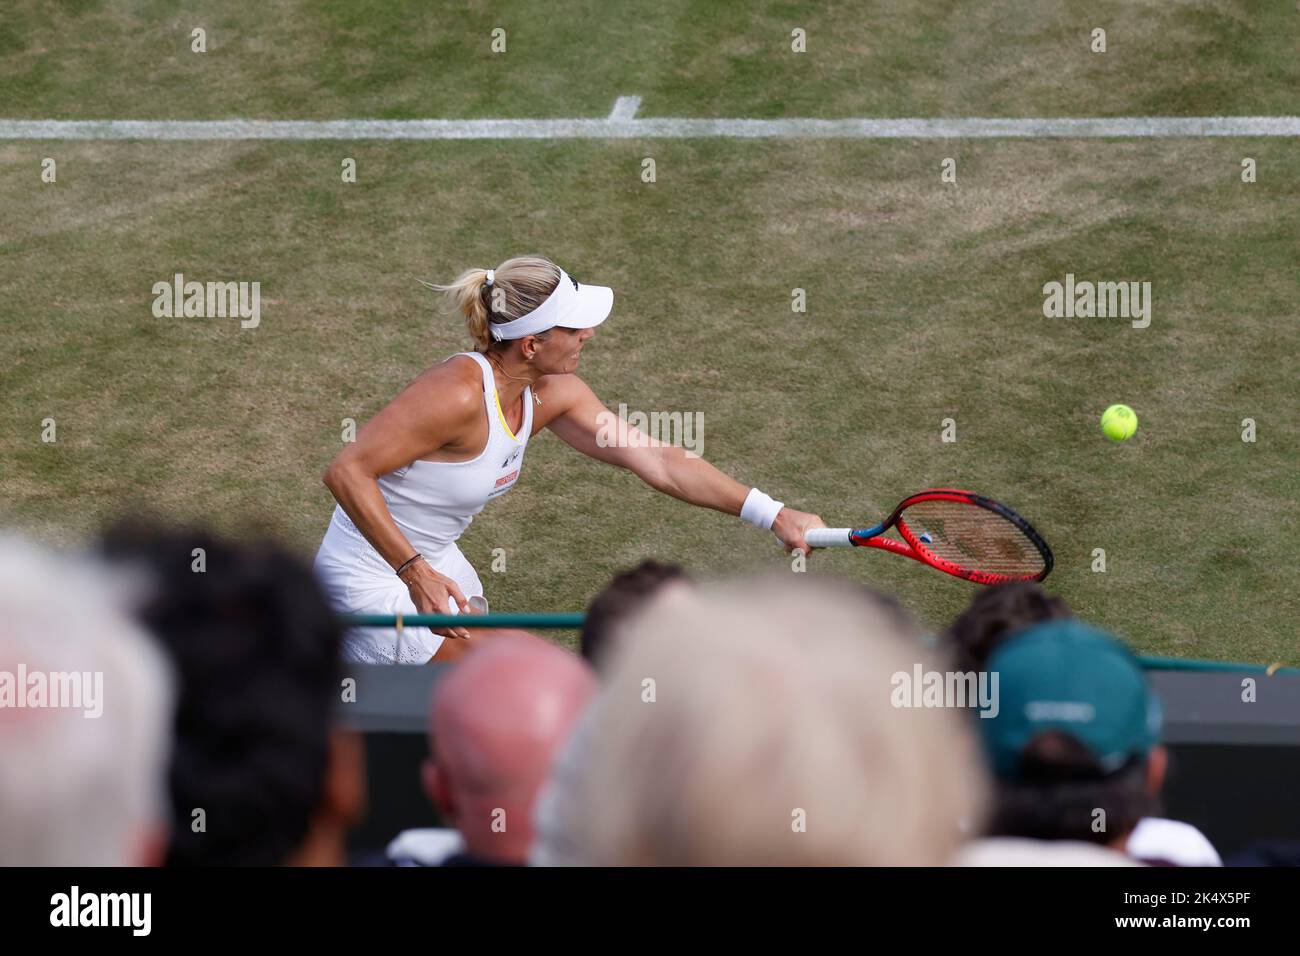 Teilansicht der Germani-Tennisspielerin Angelique Kerber, die bei den Wimbledon Championships 2022, London, England, Großbritannien, eine Rückhand spielt Stockfoto